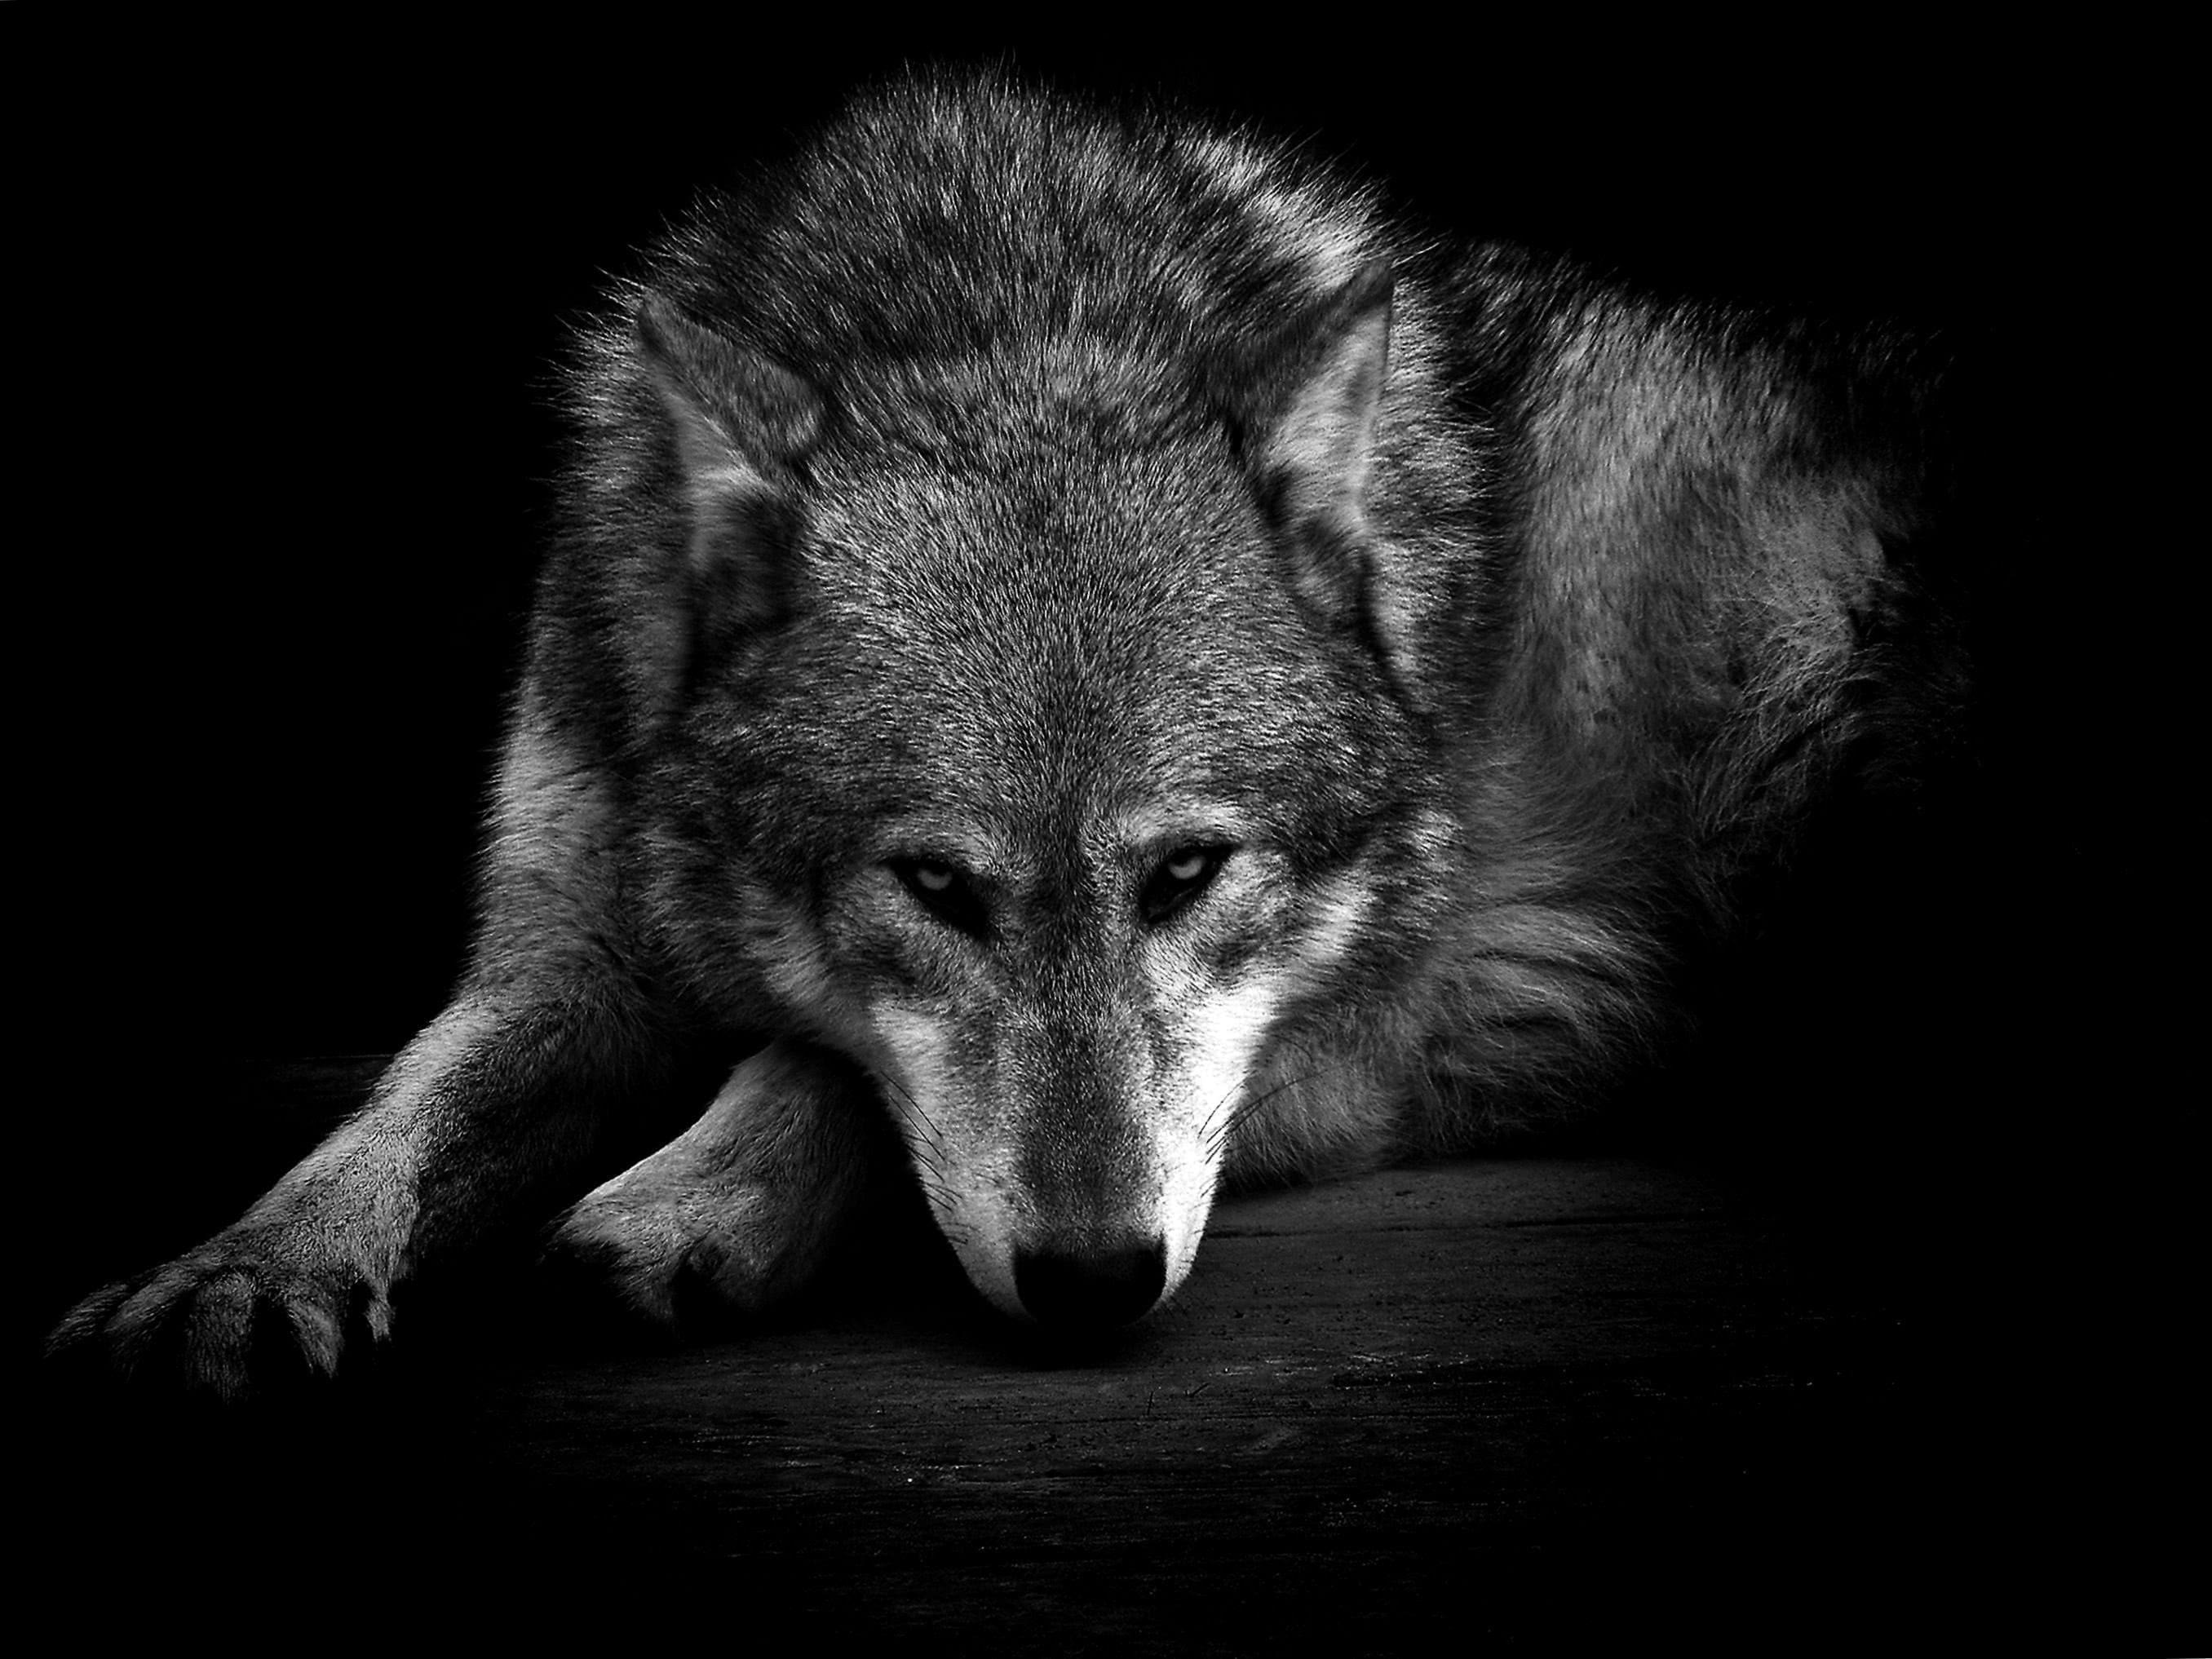 Dark Wild Wolf Wallpaper Image 1